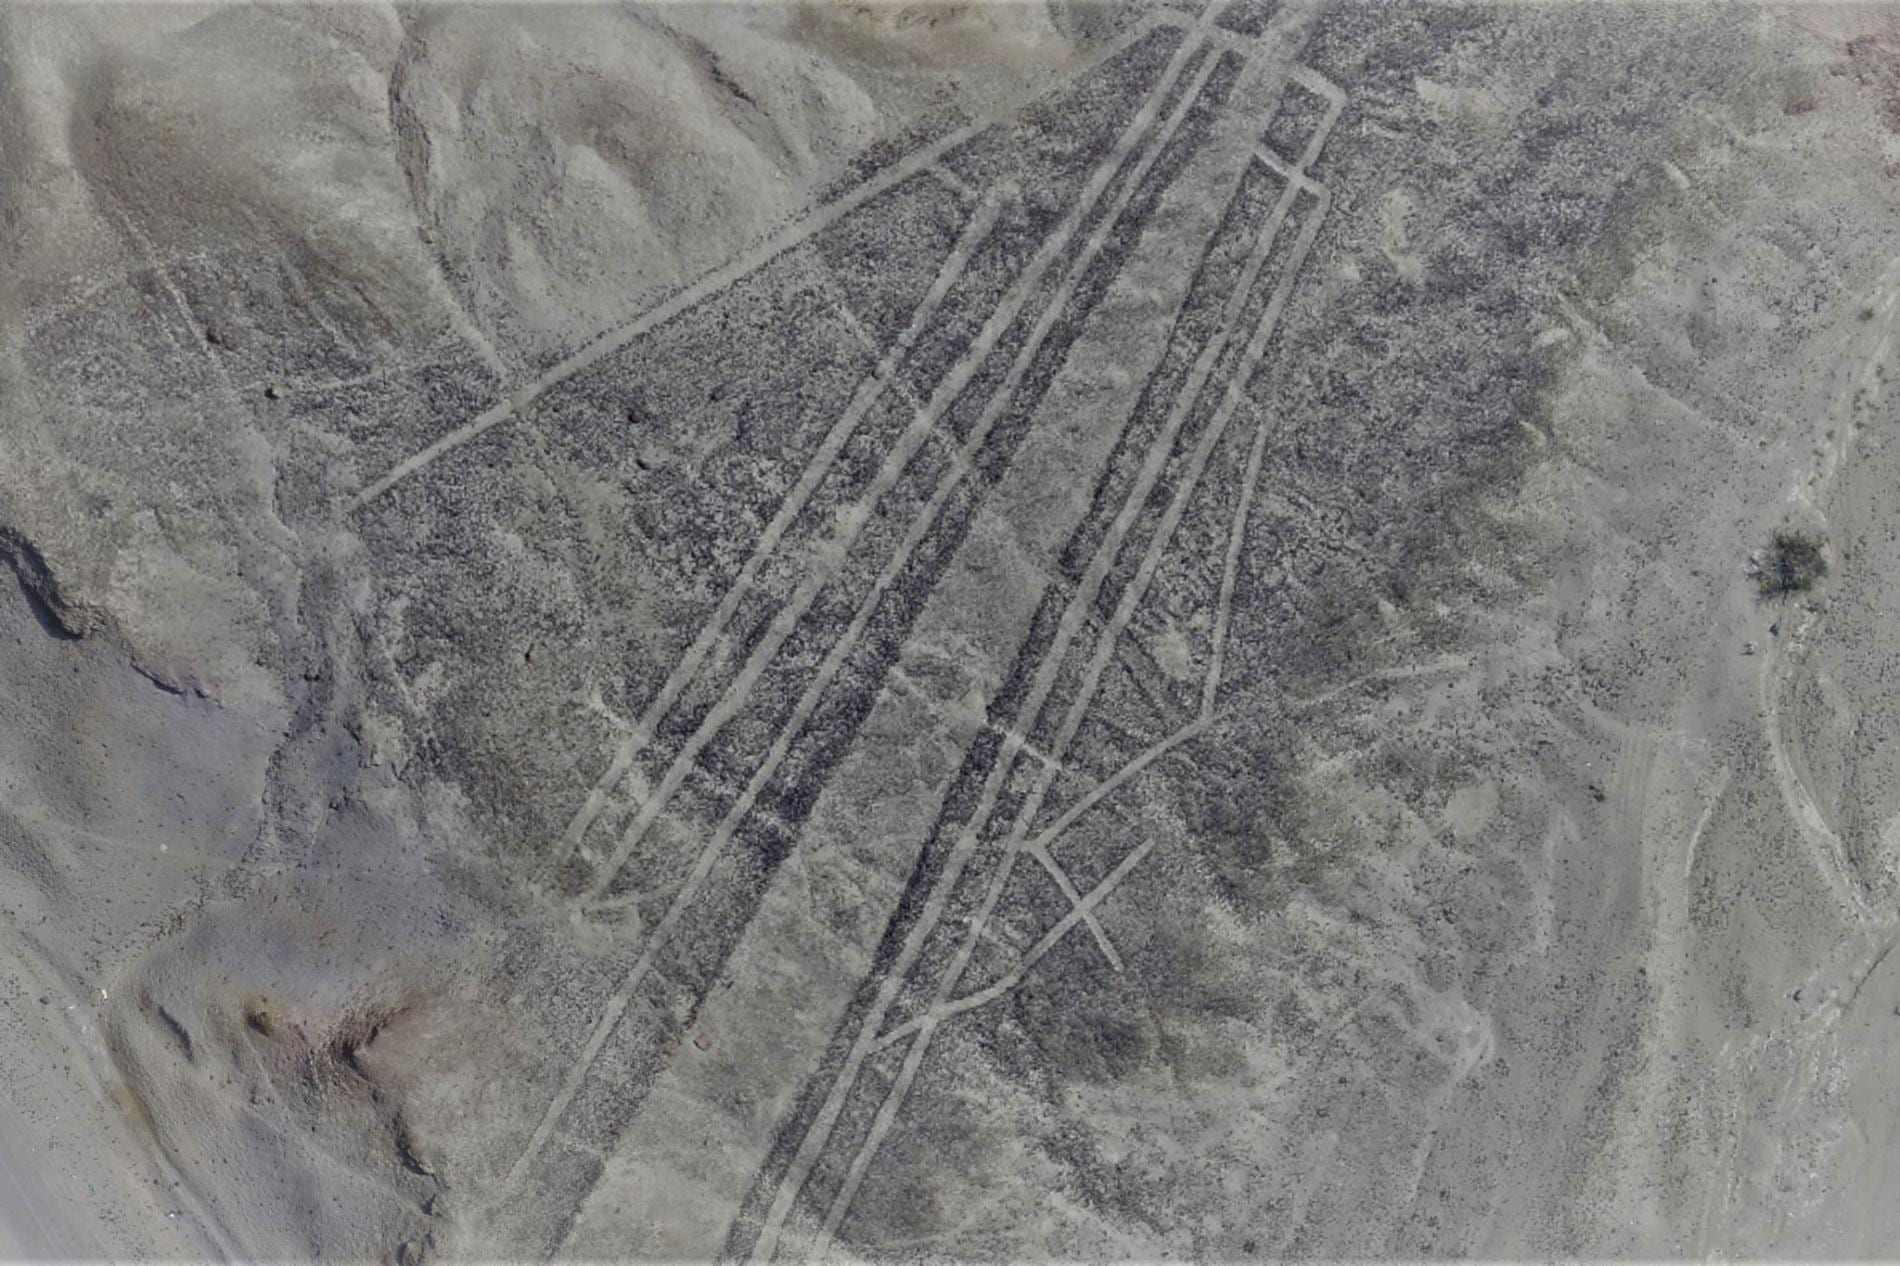 เส้น Palpa: geoglyphs ลึกลับเหล่านี้มีอายุมากกว่าเส้น Nazca 1,000 ปีหรือไม่? 2